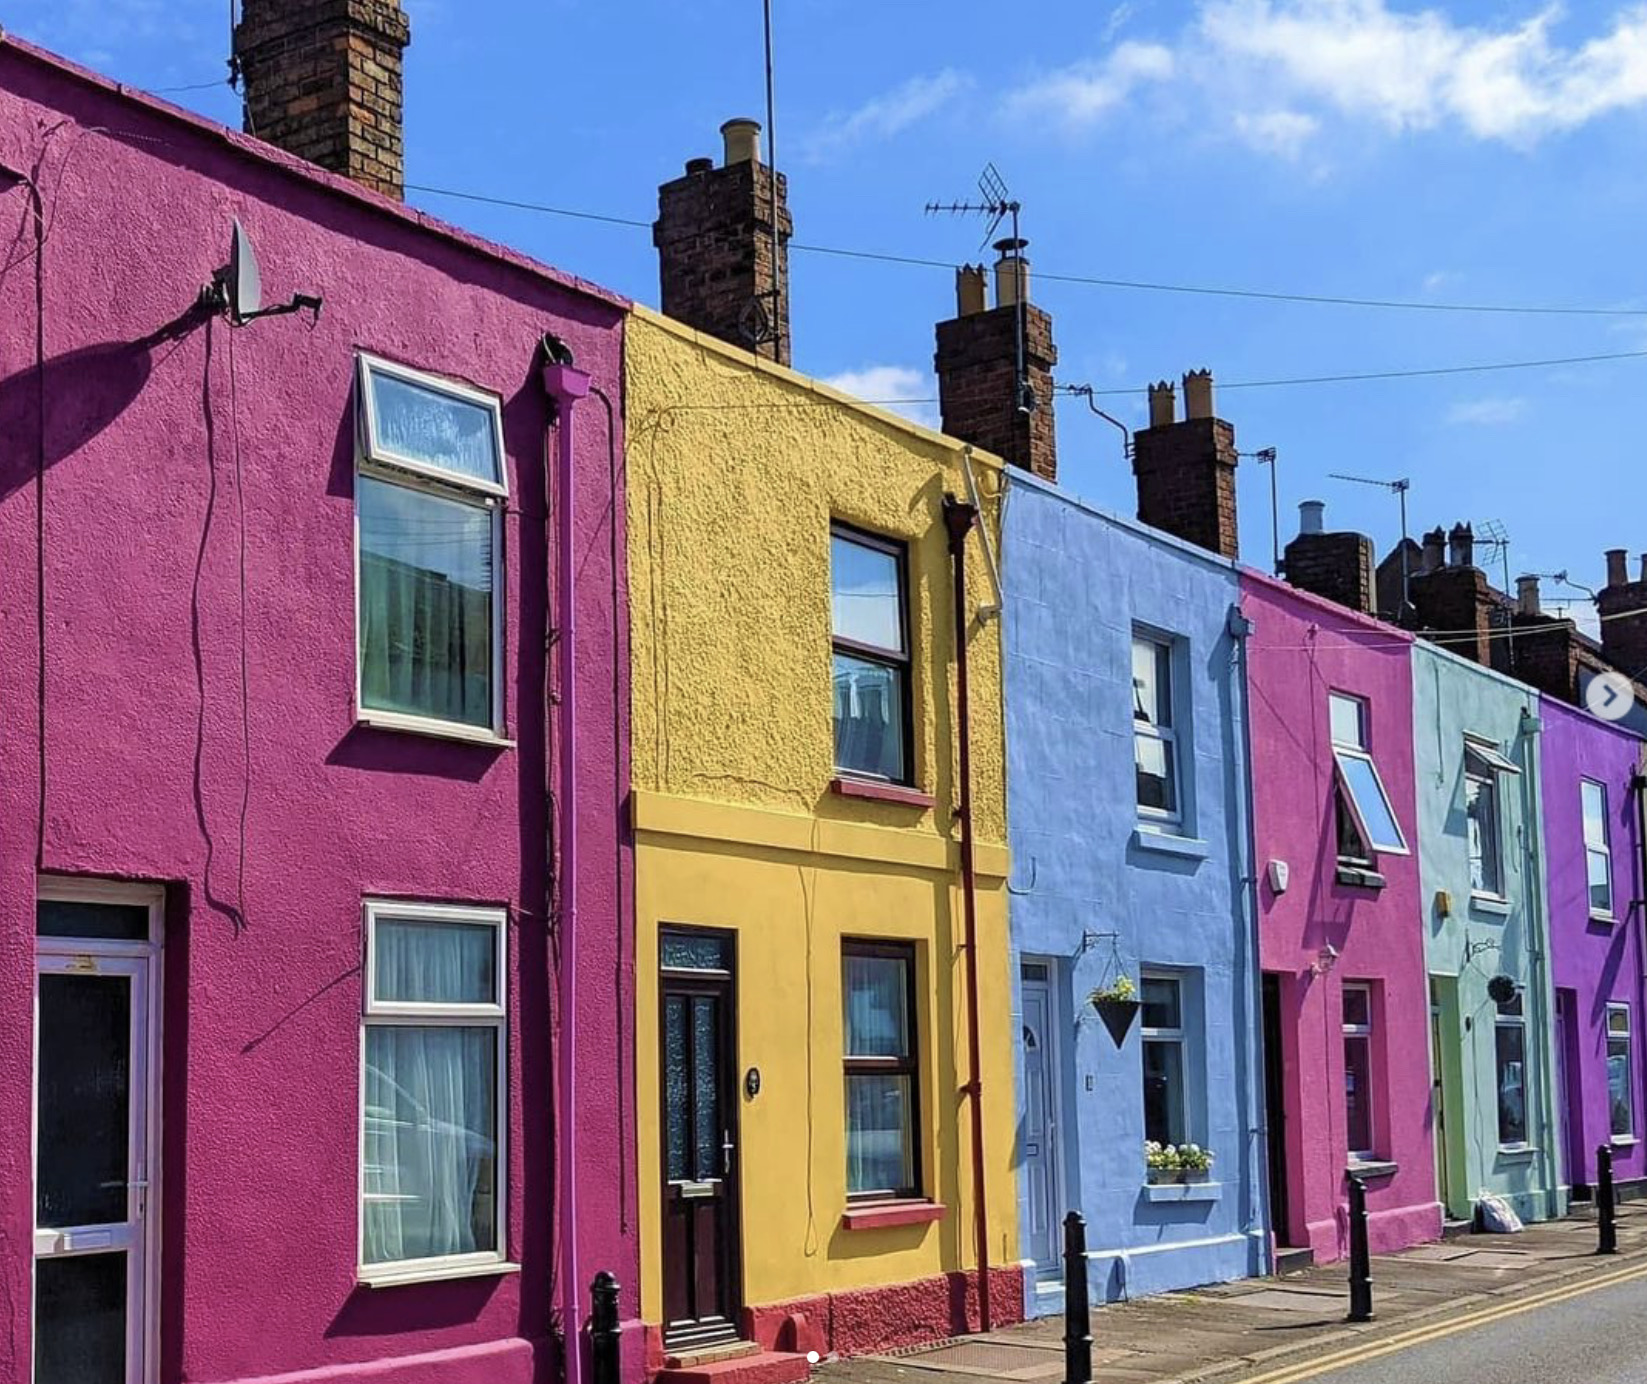 Las coloridas hileras de casas se convirtieron en la marca registrada de Tash, haciendo de esta parte de la ciudad conocida como la 